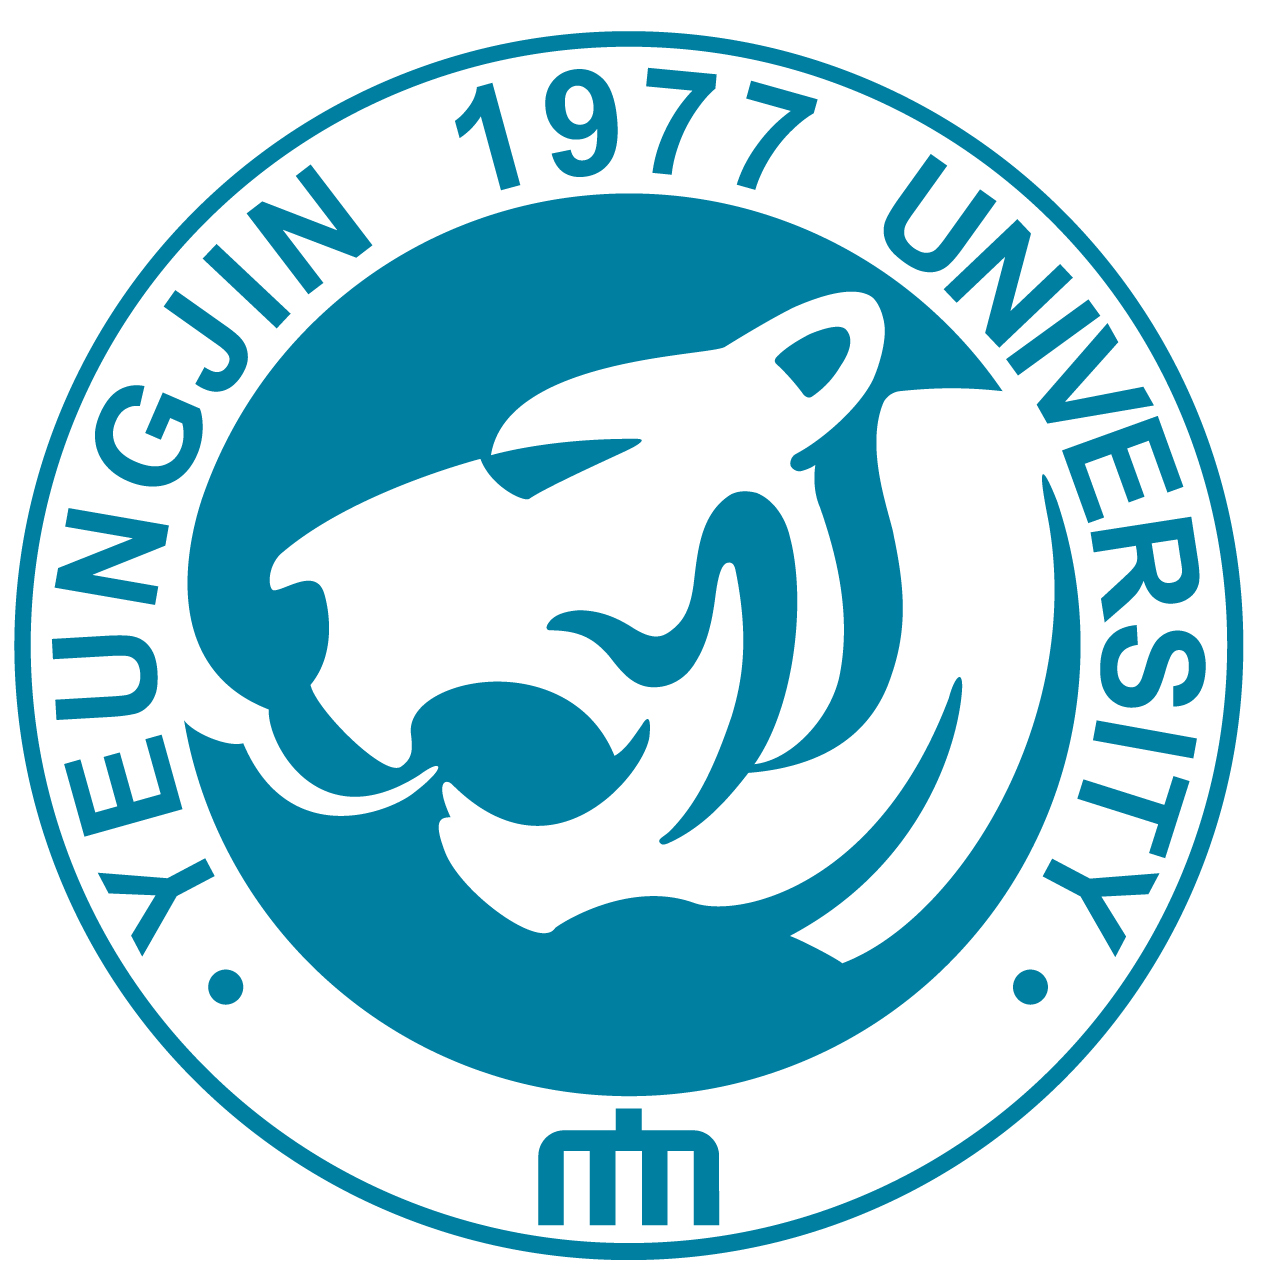 Университет Ёнчжин эмблема лого